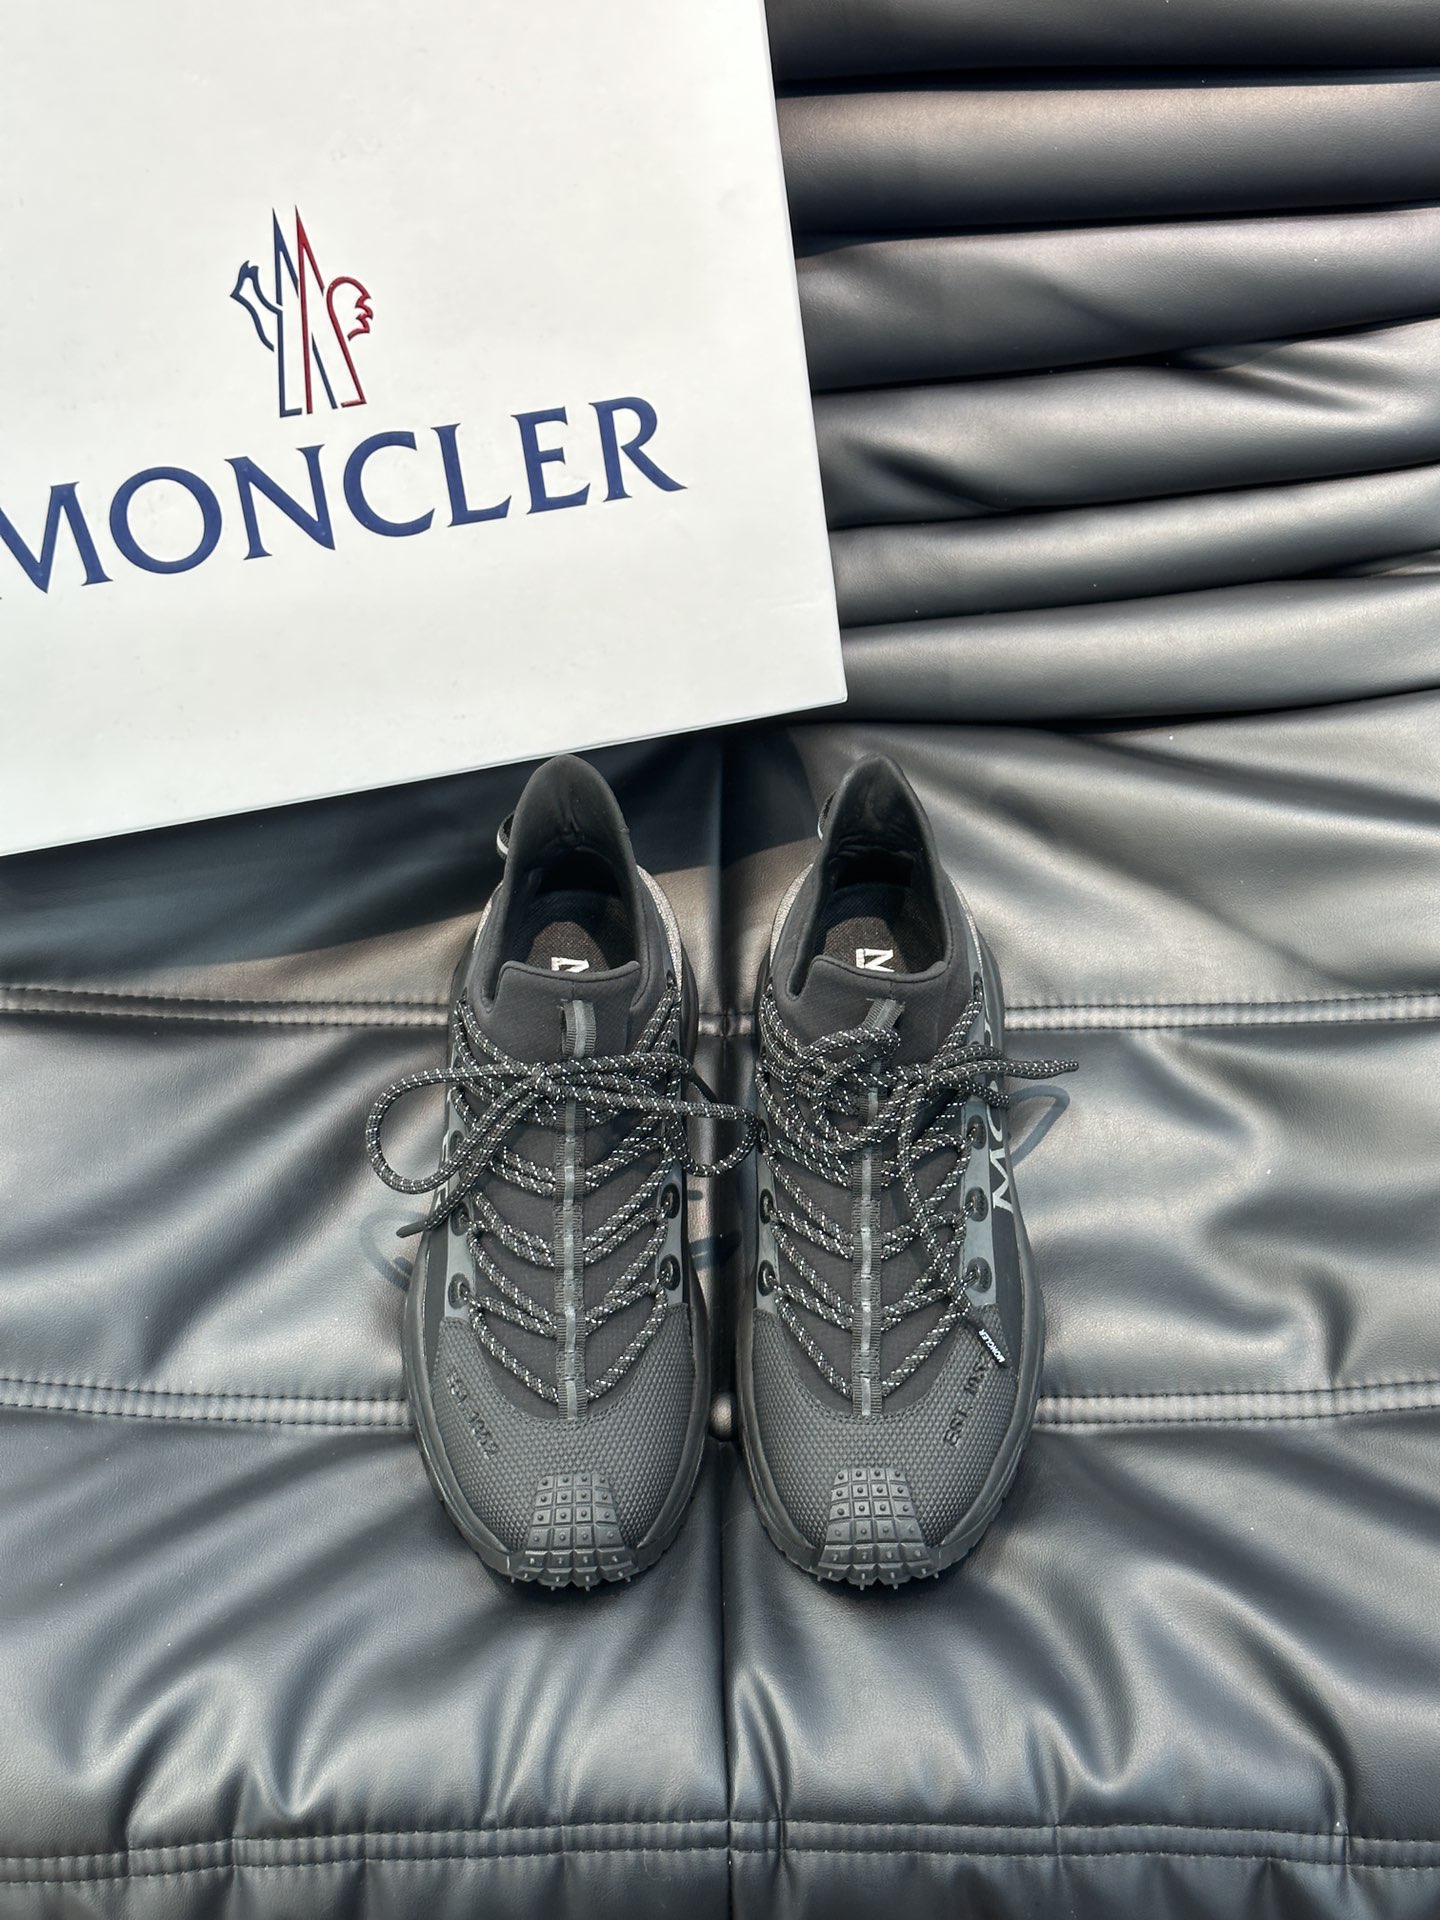 Moncler/蒙口男士户外系带运动鞋具有舒适防滑性能采用皮革和科技面料制成专为户外跑步或都市漫步而设兼